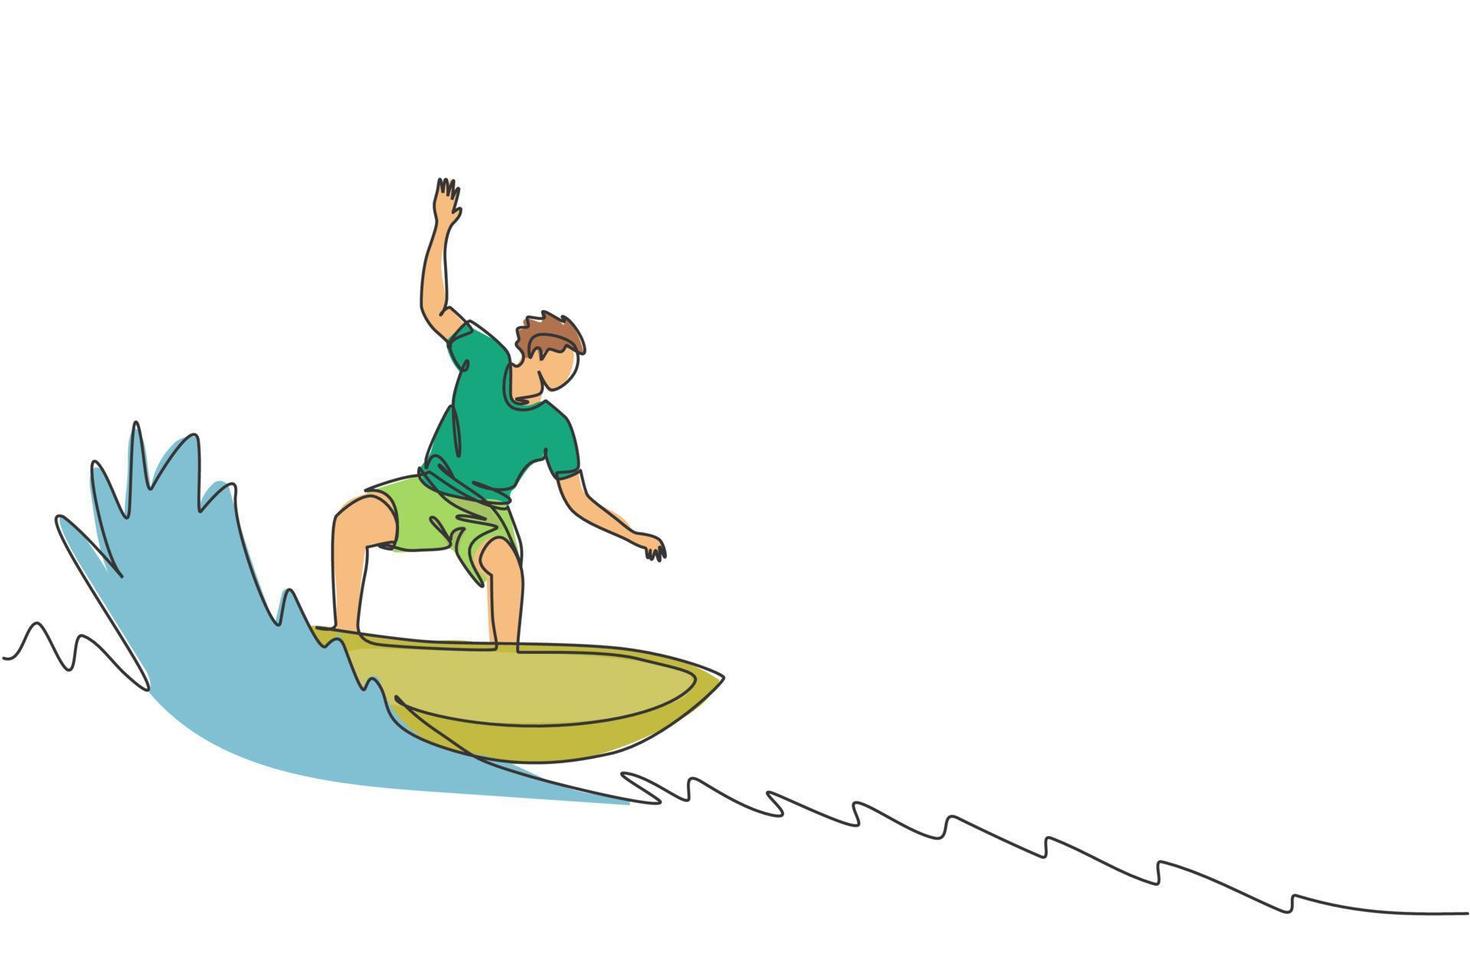 eine einzige Strichzeichnung eines jungen sportlichen Surfers, der auf einem Fass mit großen Wellen in der grafischen Vektorillustration eines Surfstrandparadieses reitet. extremes wassersportkonzept. modernes Design mit durchgehender Linie vektor